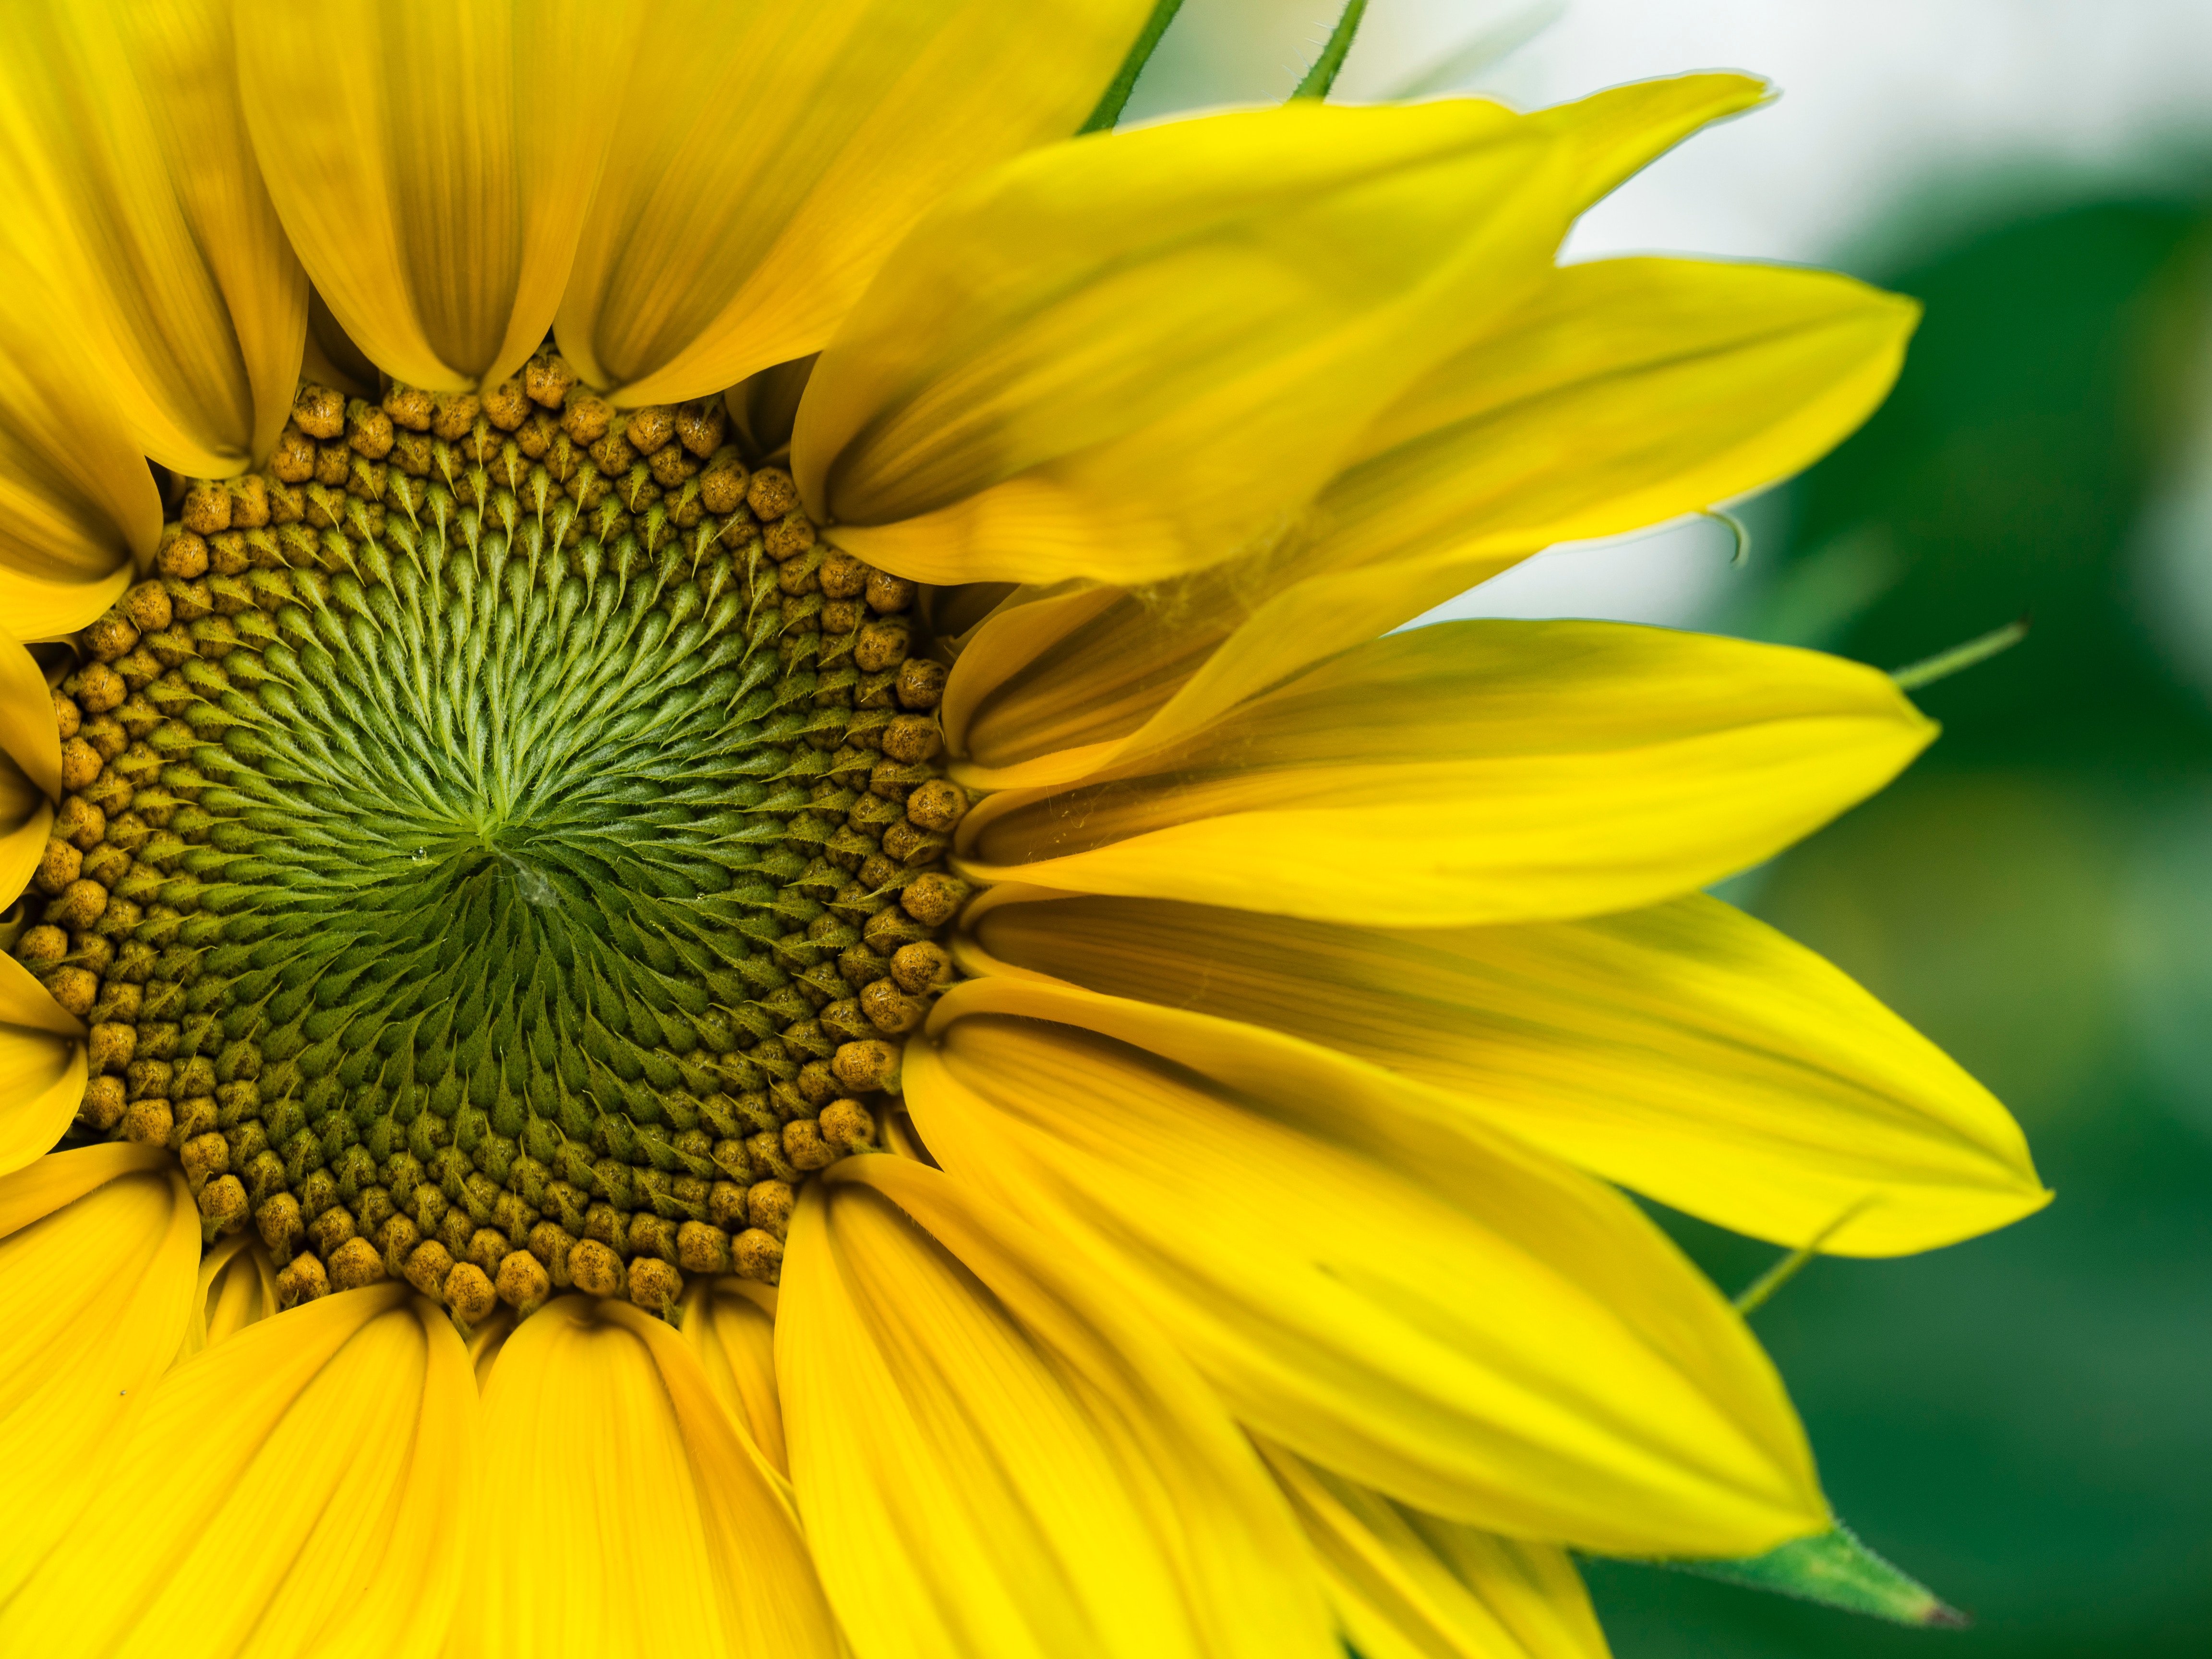 kws_sunflower_yellow_blossom.jpg